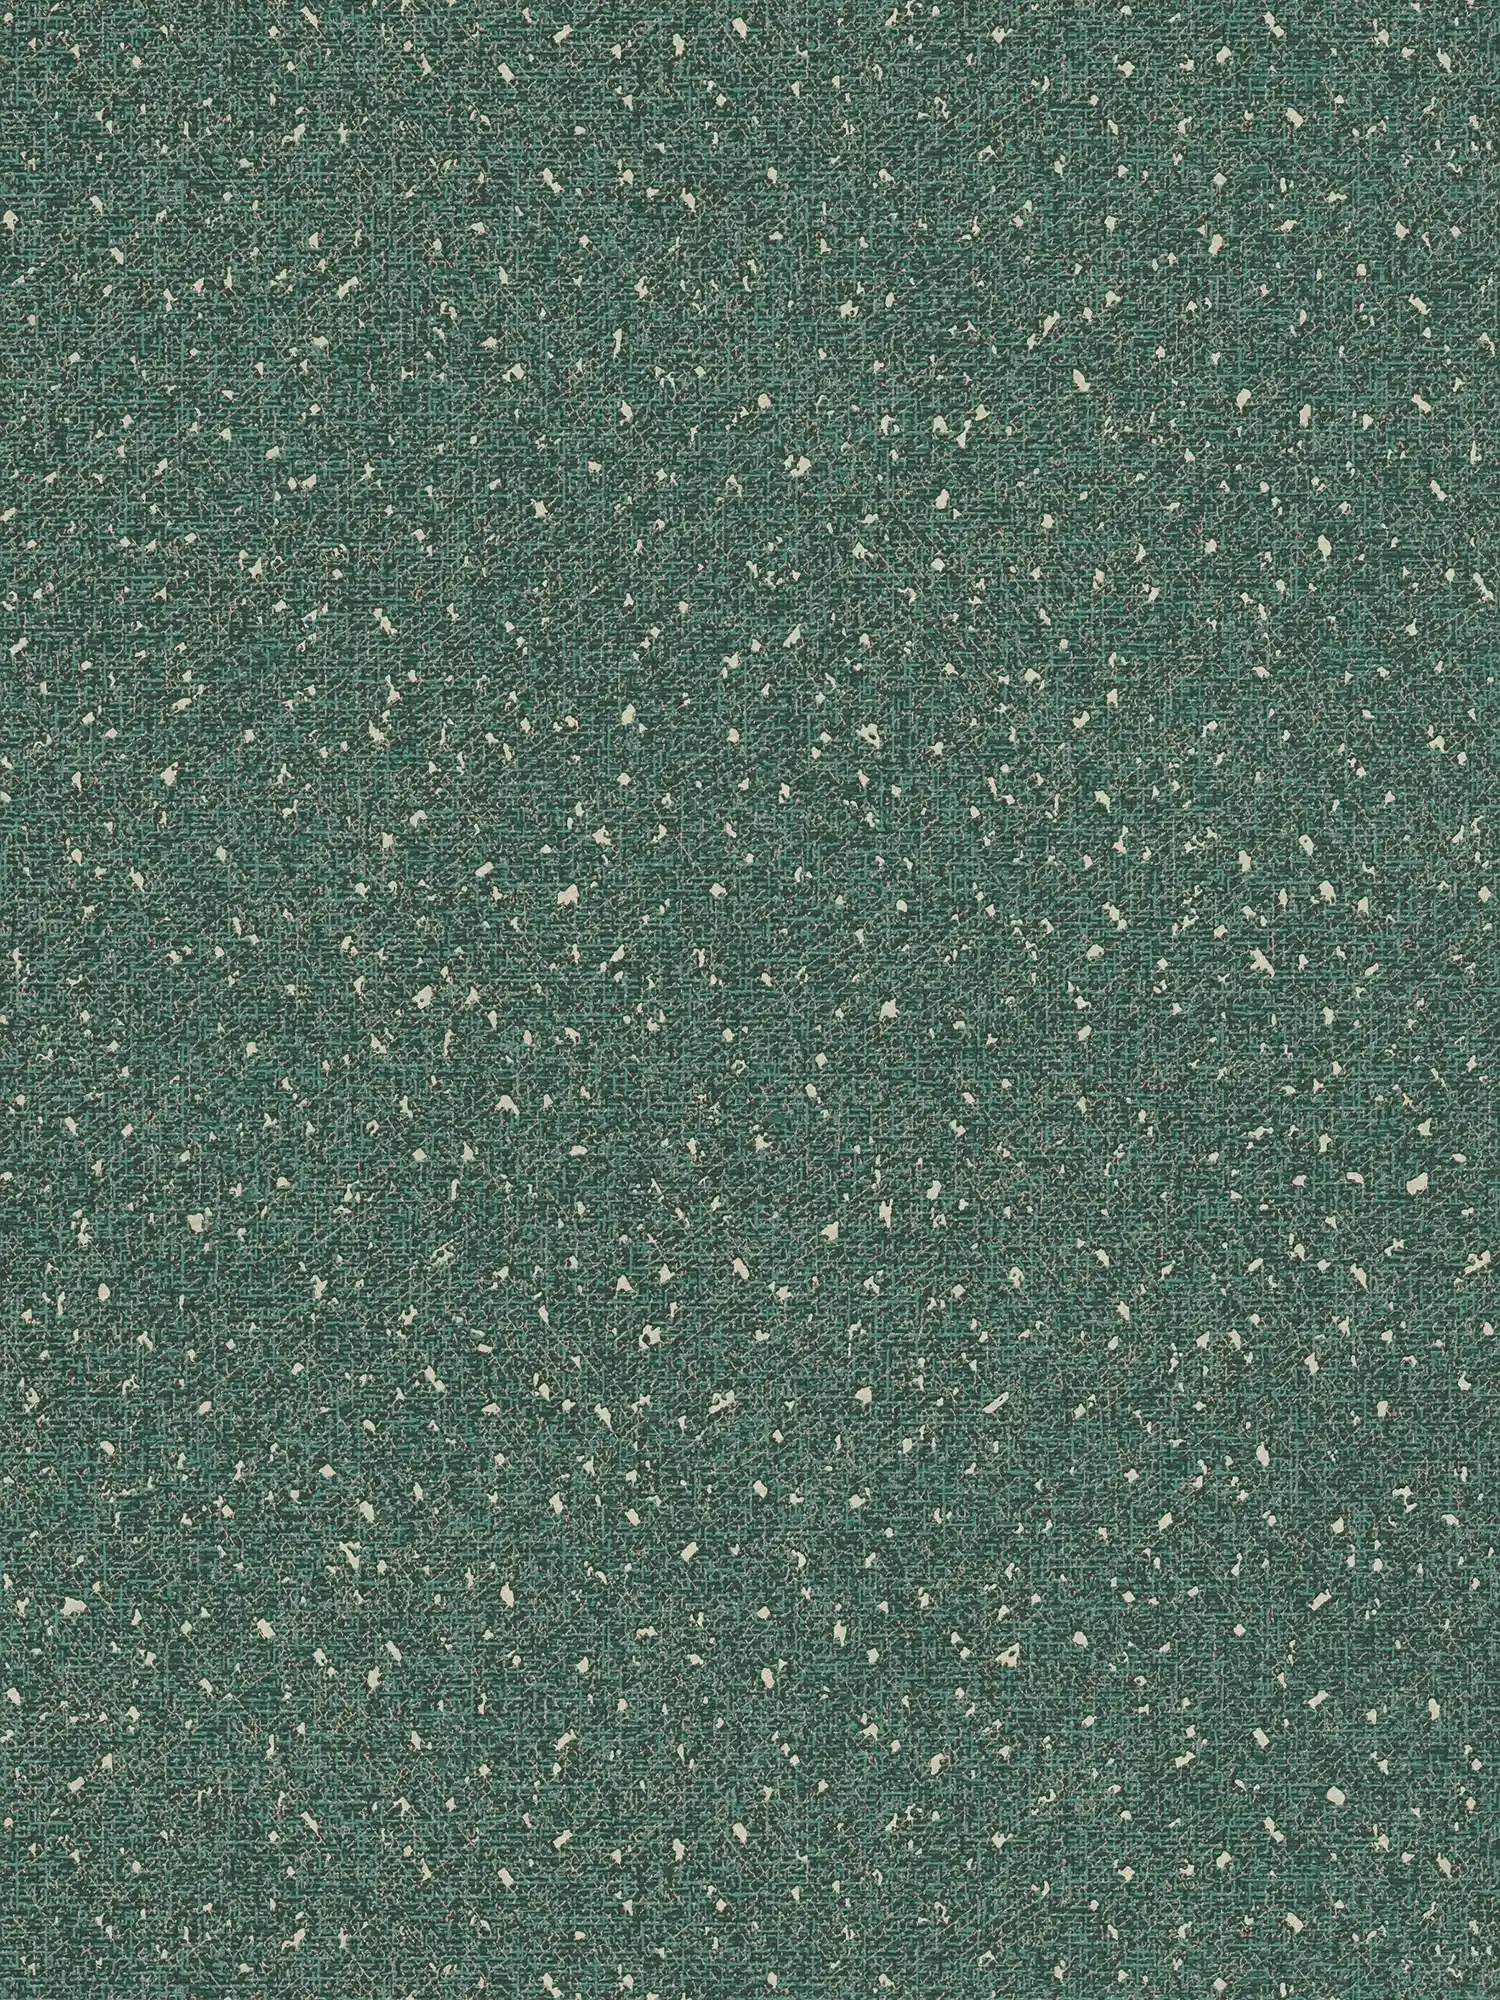 Tapete mit textiler Struktur und Metallic Akzent – Grün, Metallic
